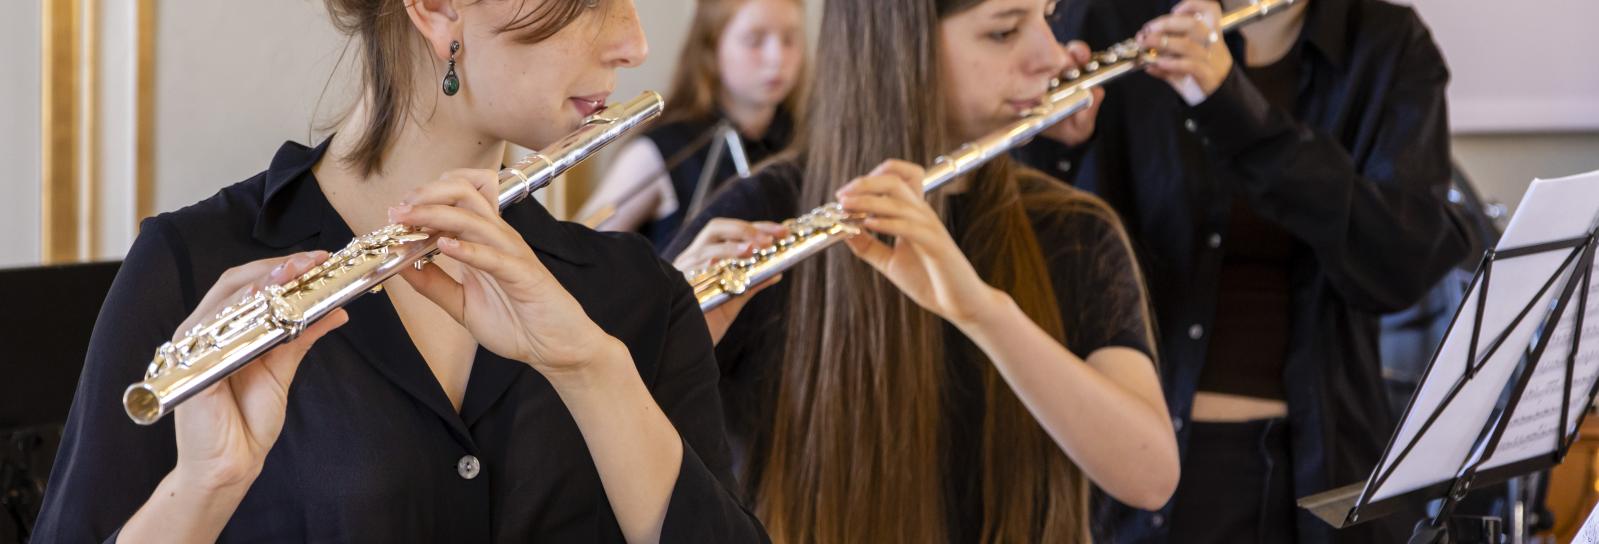 Københavns Musikskoles undervisere